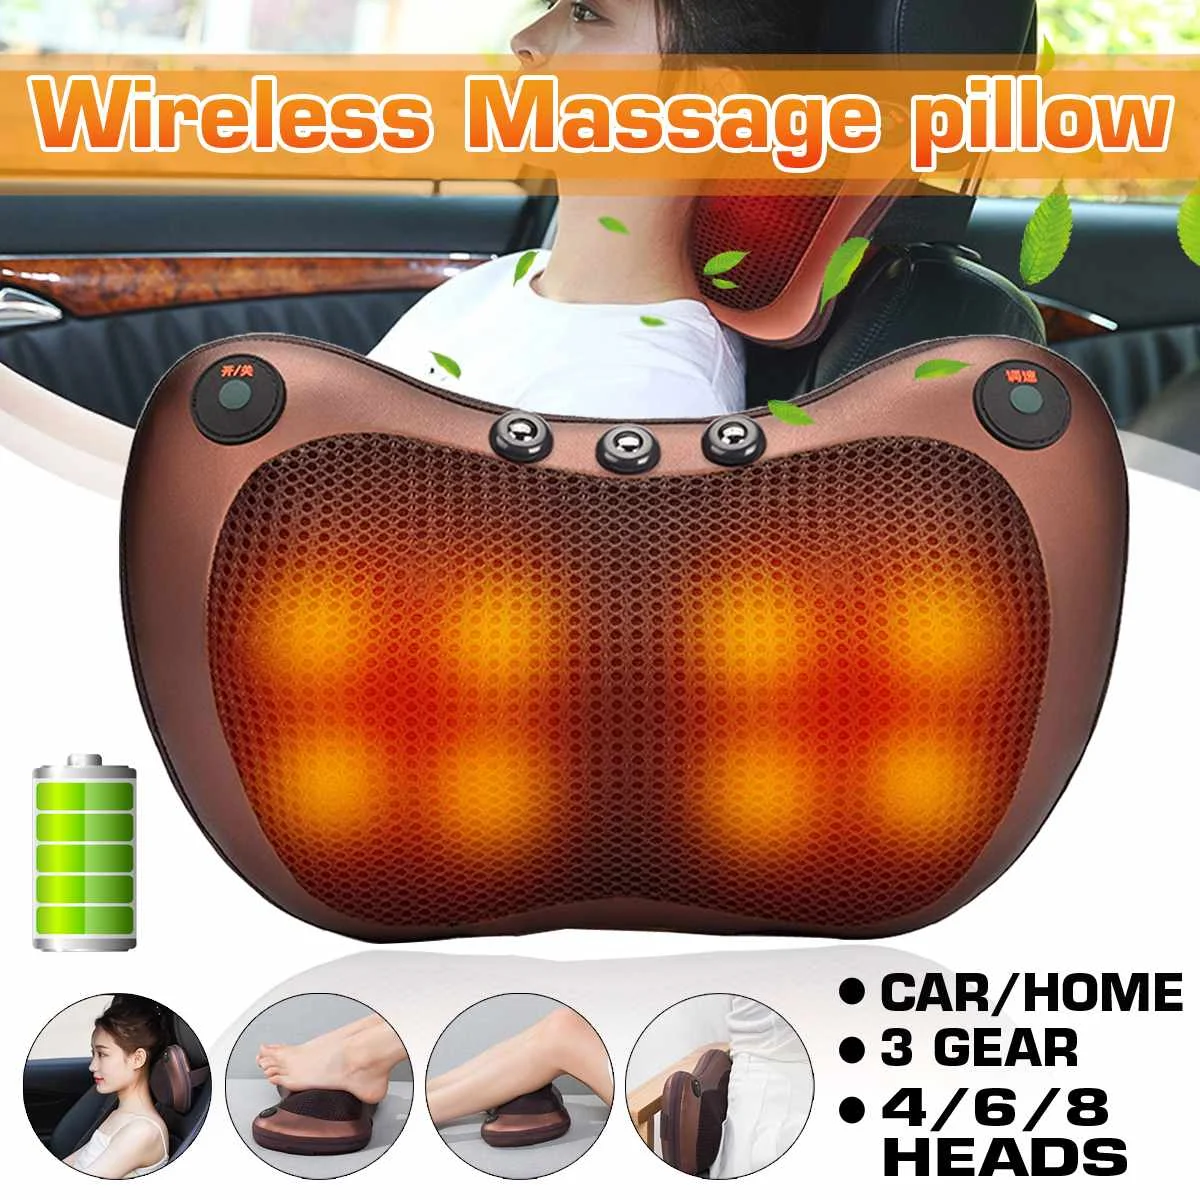 

Беспроводная массажная подушка-вибратор массаж шеи шиацу, с электрическим подогревом для плеч, спины, инфракрасная терапия